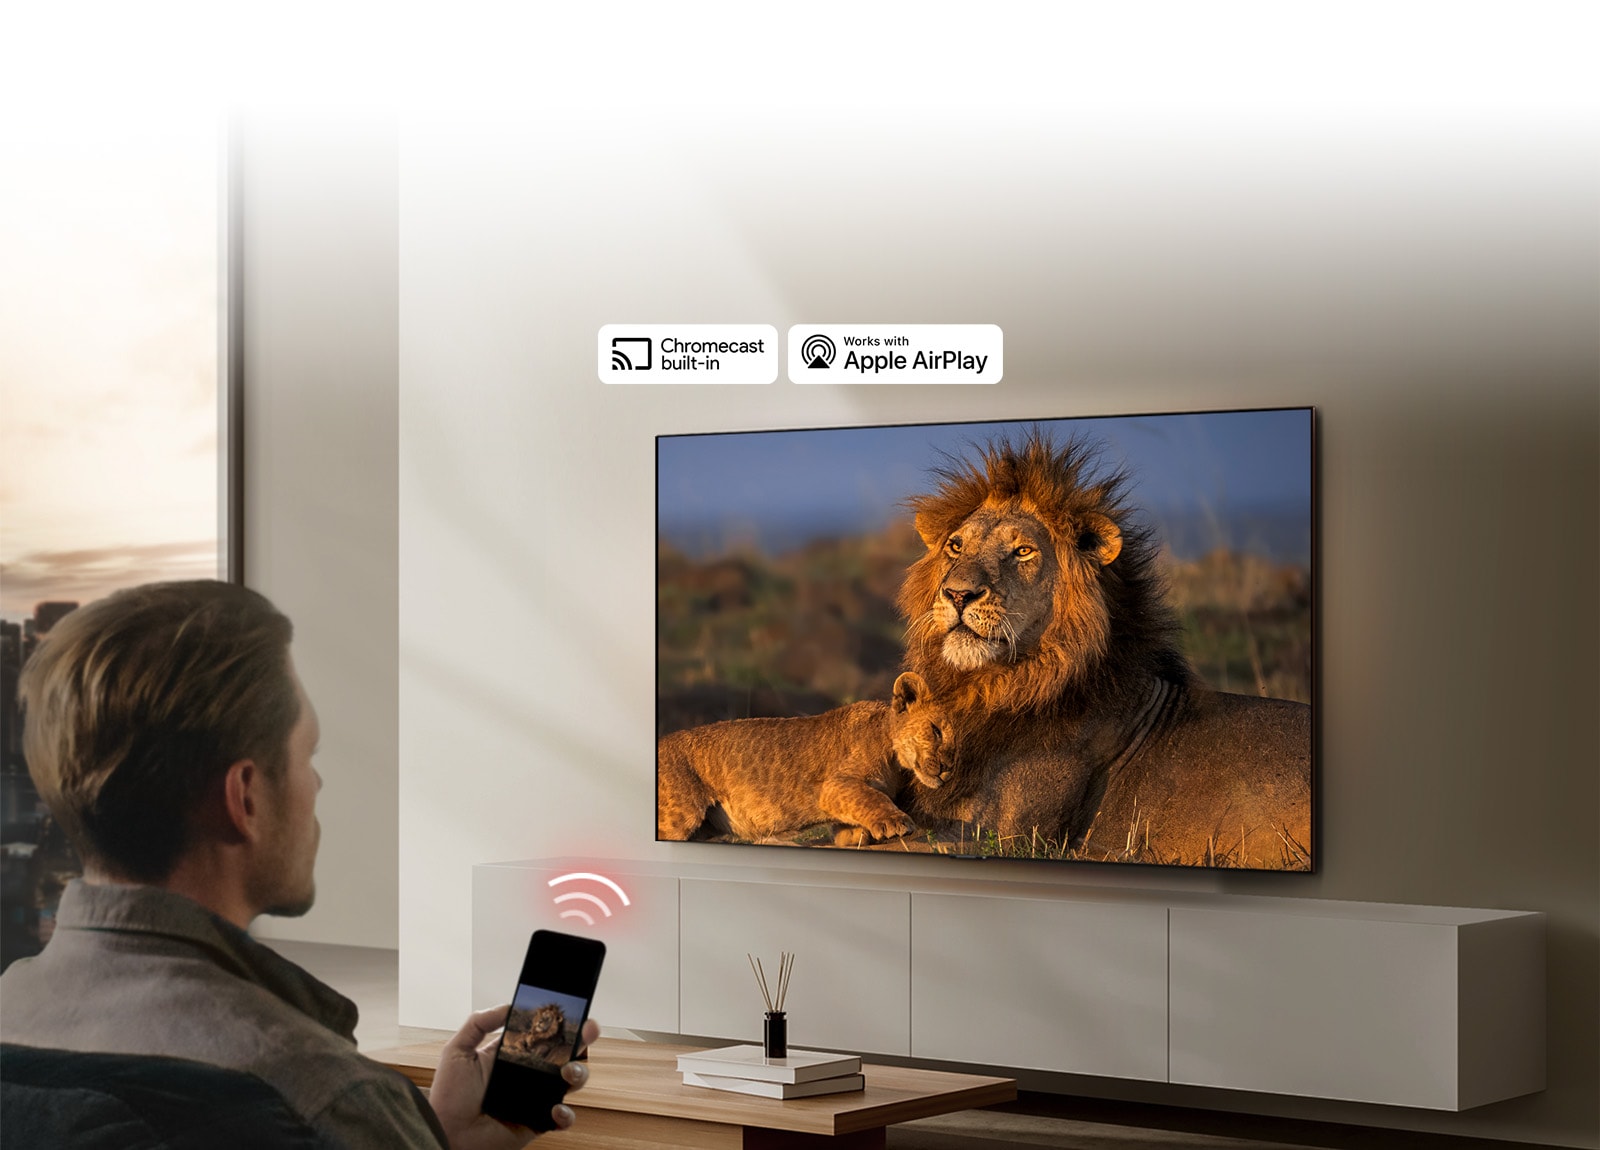 Svetainėje ant sienos sumontuotas LG TV, kuriame rodomas liūtas ir liūtukas. Pirmame plane sėdi vyras su išmaniuoju telefonu rankoje ir rodo tą patį liūtų atvaizdą. Tiesiai virš išmaniojo telefono, nukreipto į TV, rodomas trijų neoninių raudonų lenktų juostų vaizdas.